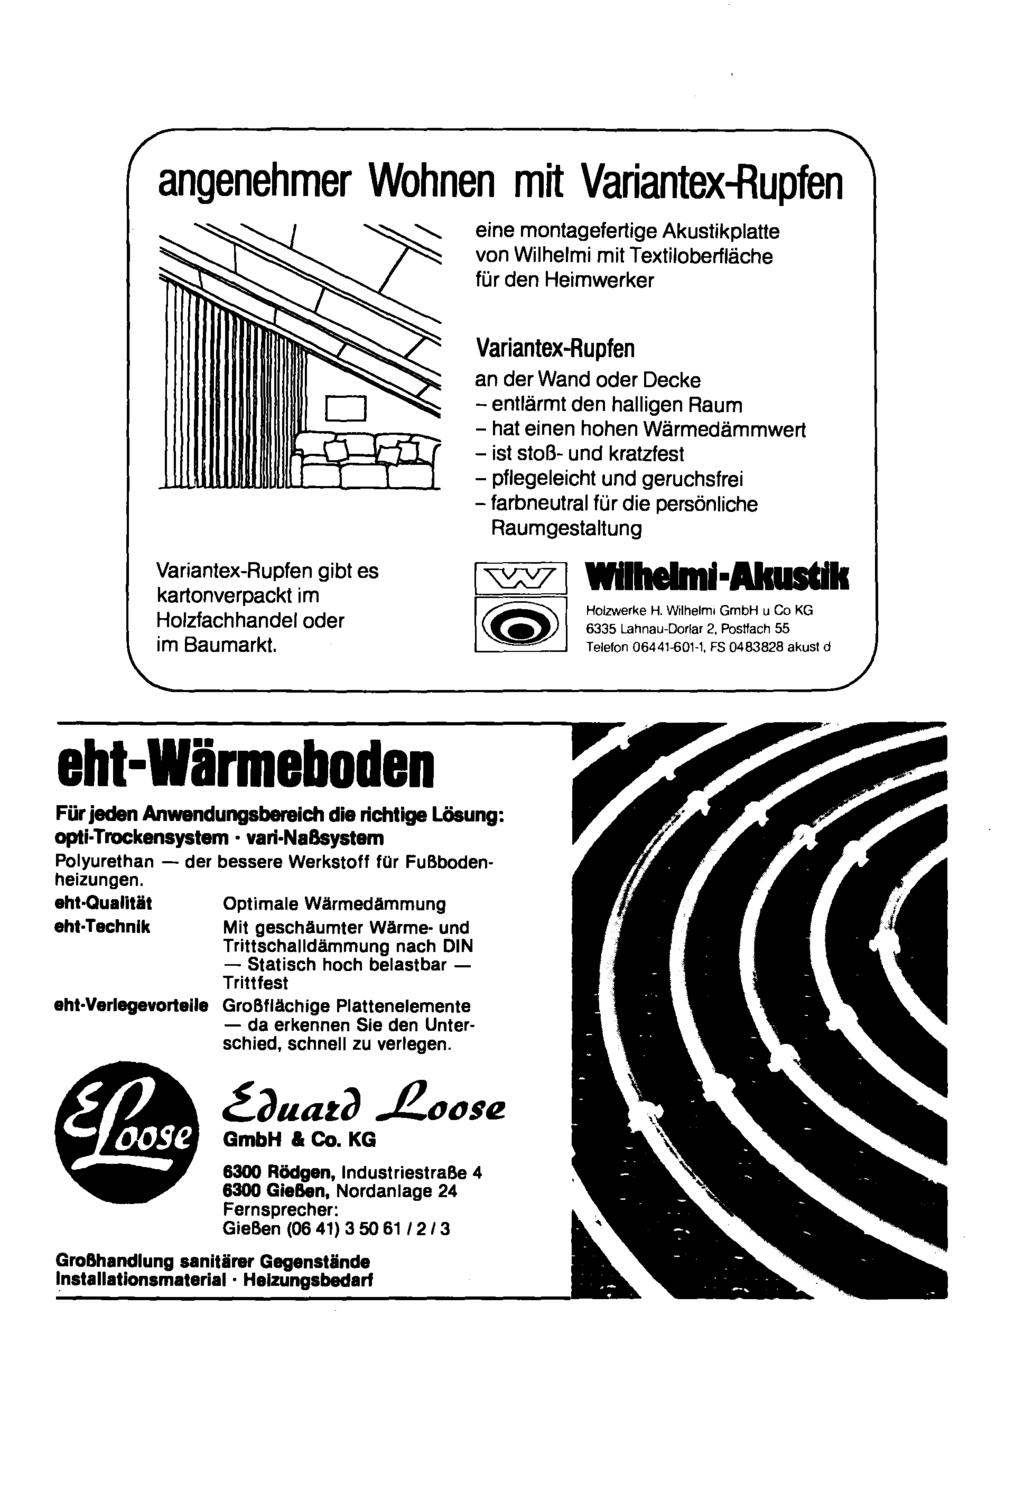 angenehmer Wohnen mit Variantex-Rupfen eine montagefertige Akustikplatte von Wilhelmi mit Textiloberfläche für den Heimwerker Variantex-Rupfen gibt es kartonverpackt im Holzfachhandel oder im